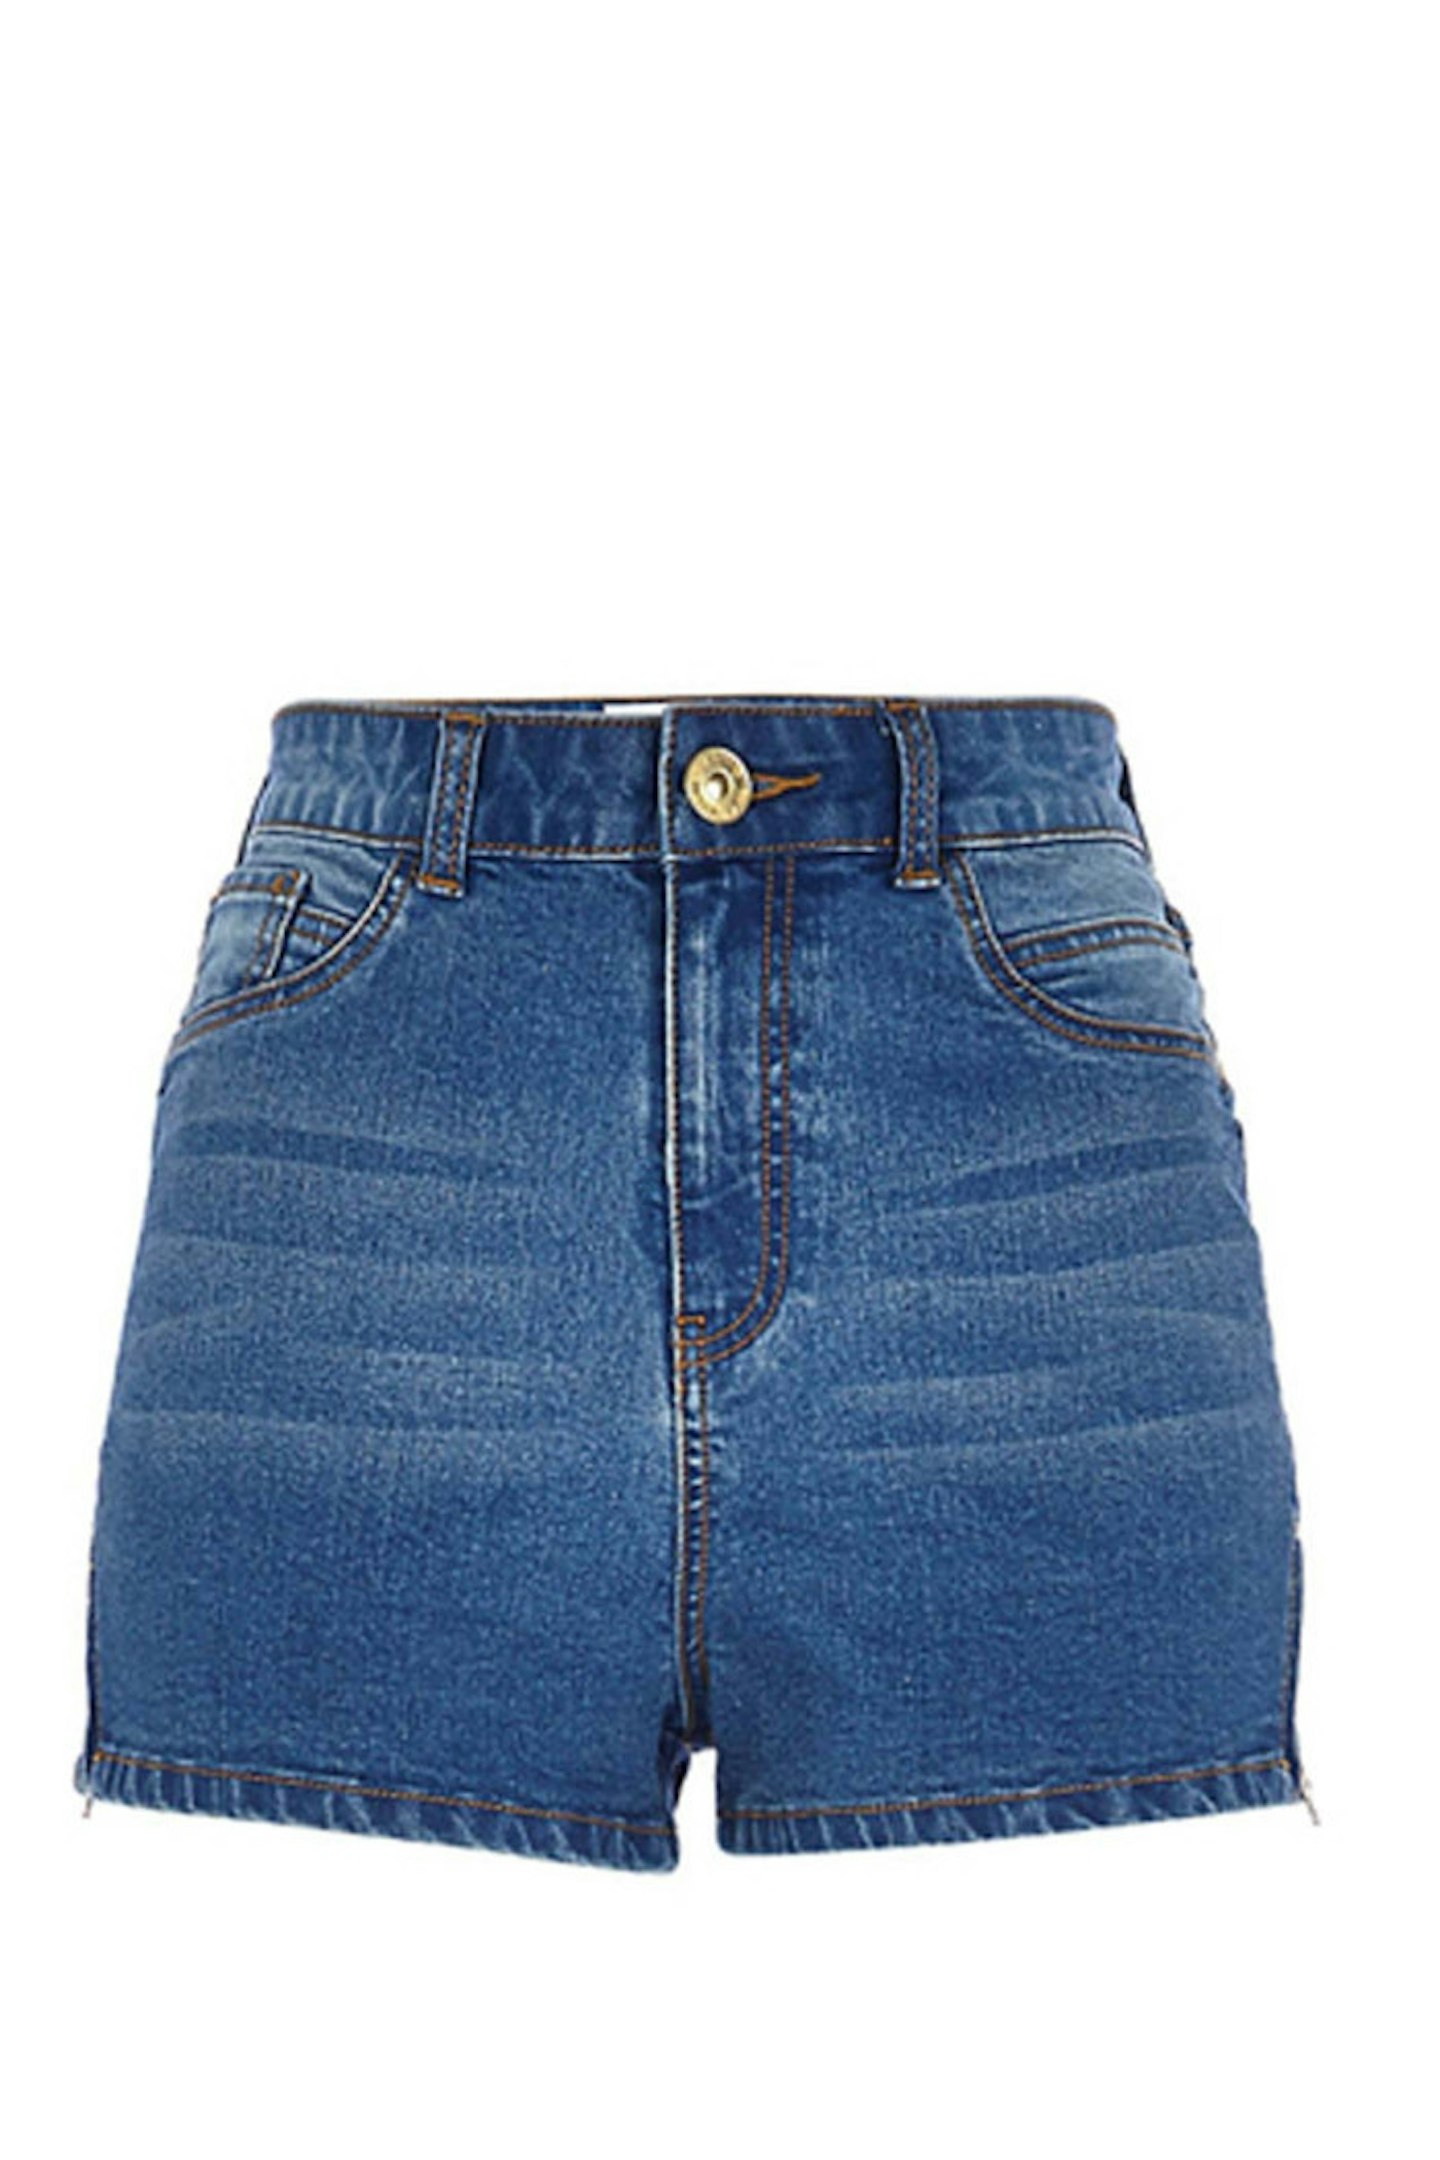 Denim Shorts, £28, River Island